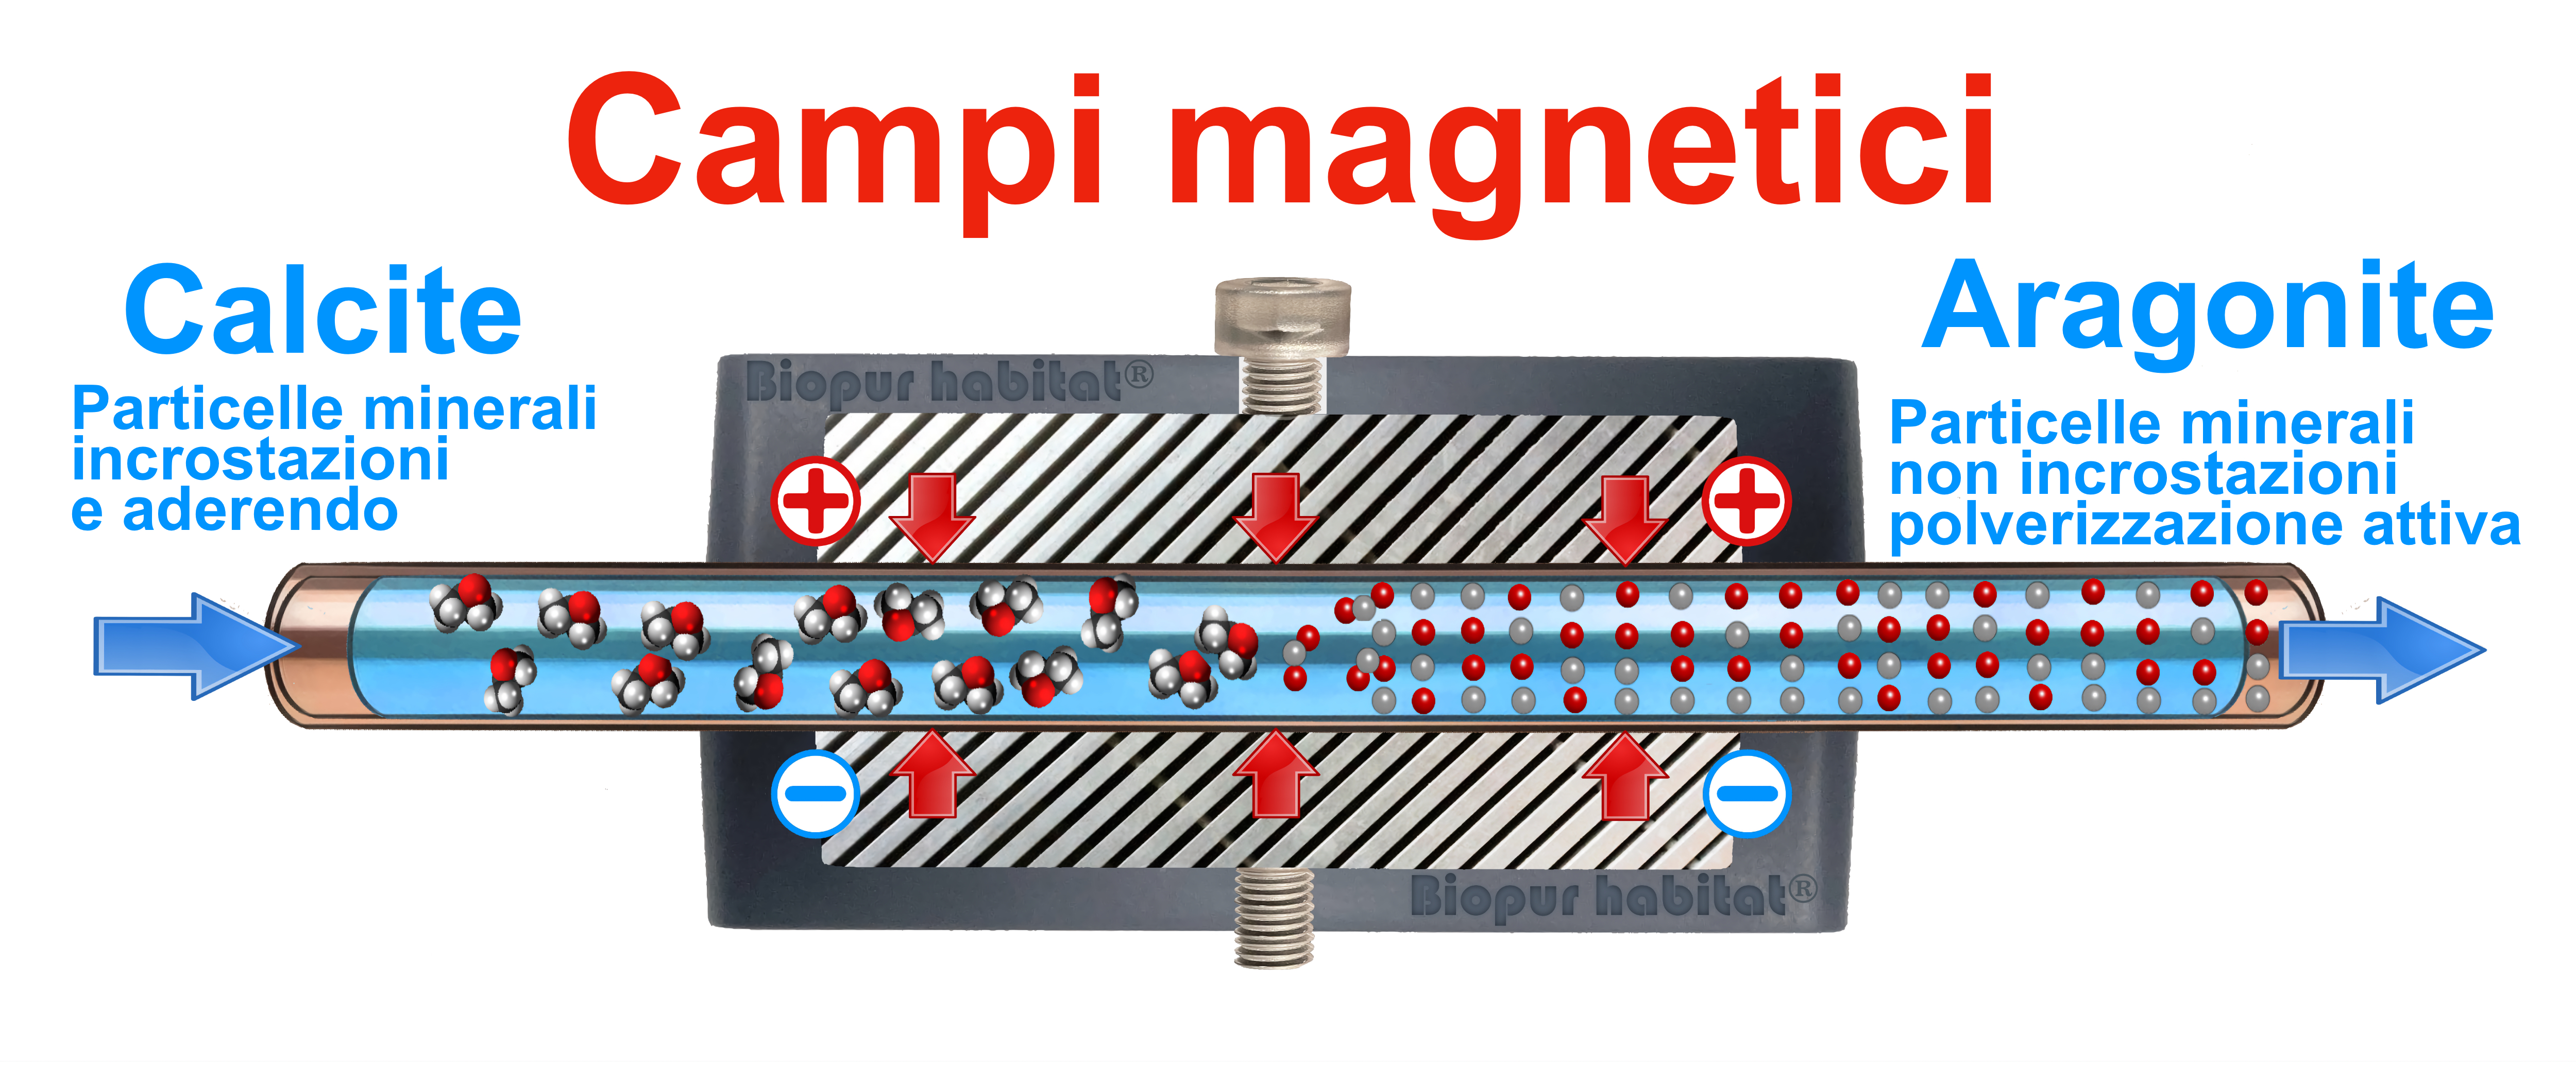 Magnete anticalcare magnetico powermag 12800 gauss